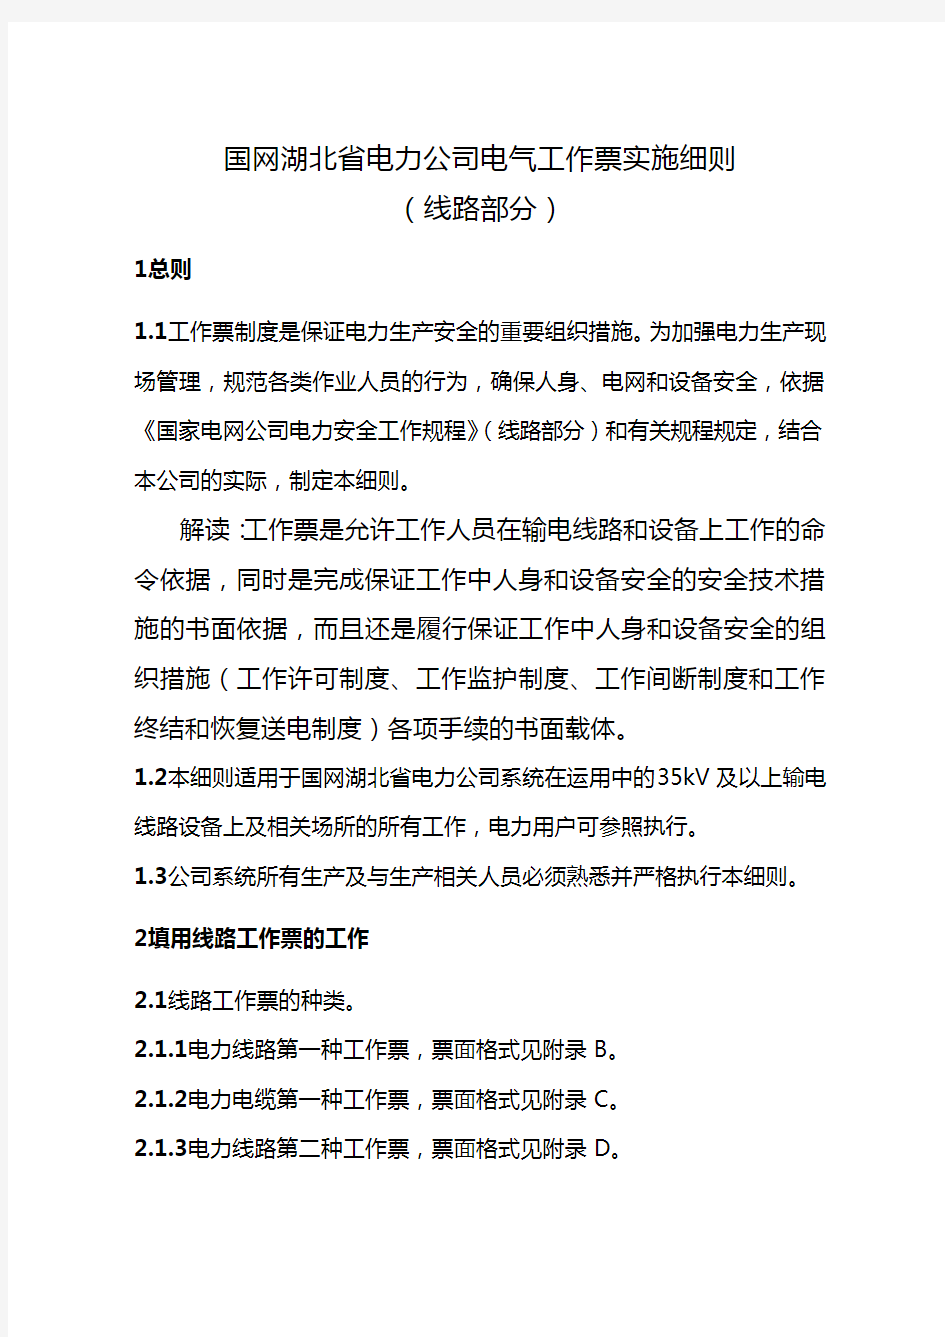 (建筑电气工程)国网湖北省电力公司电气工作票实施细则(线路部分)